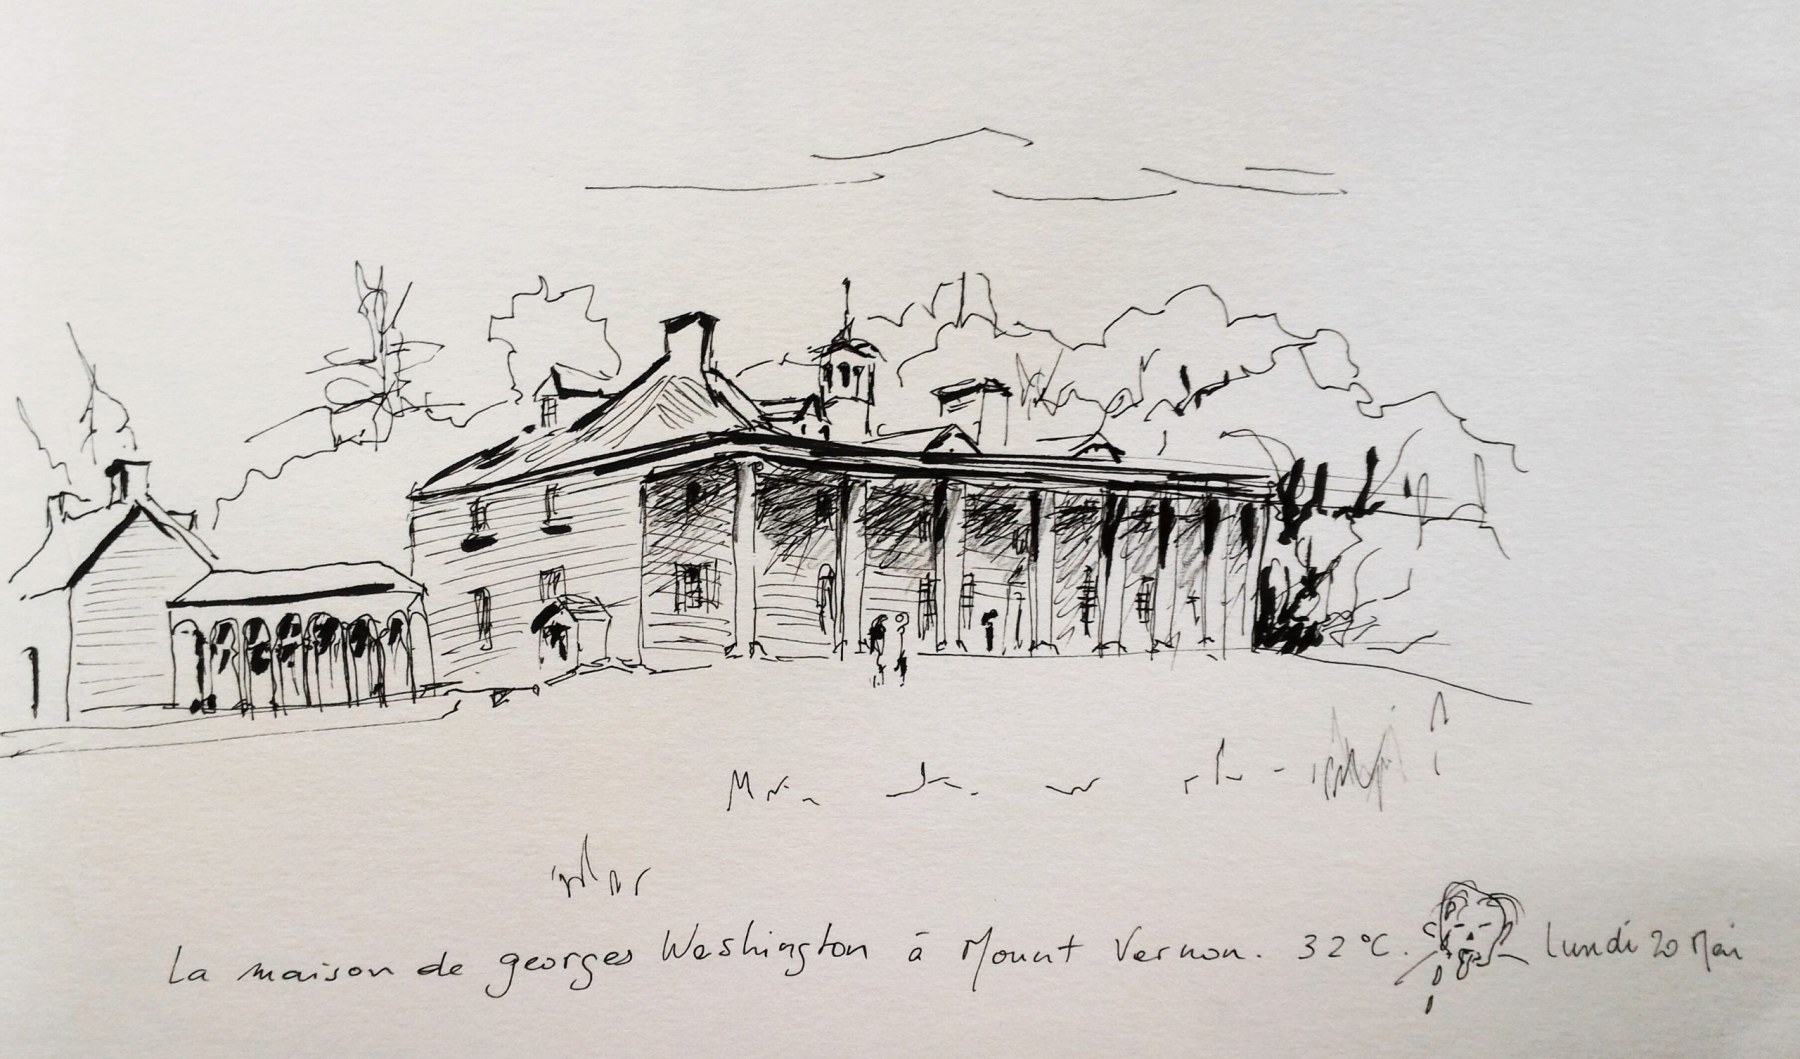 La maison de George Washington à Mont Vernon